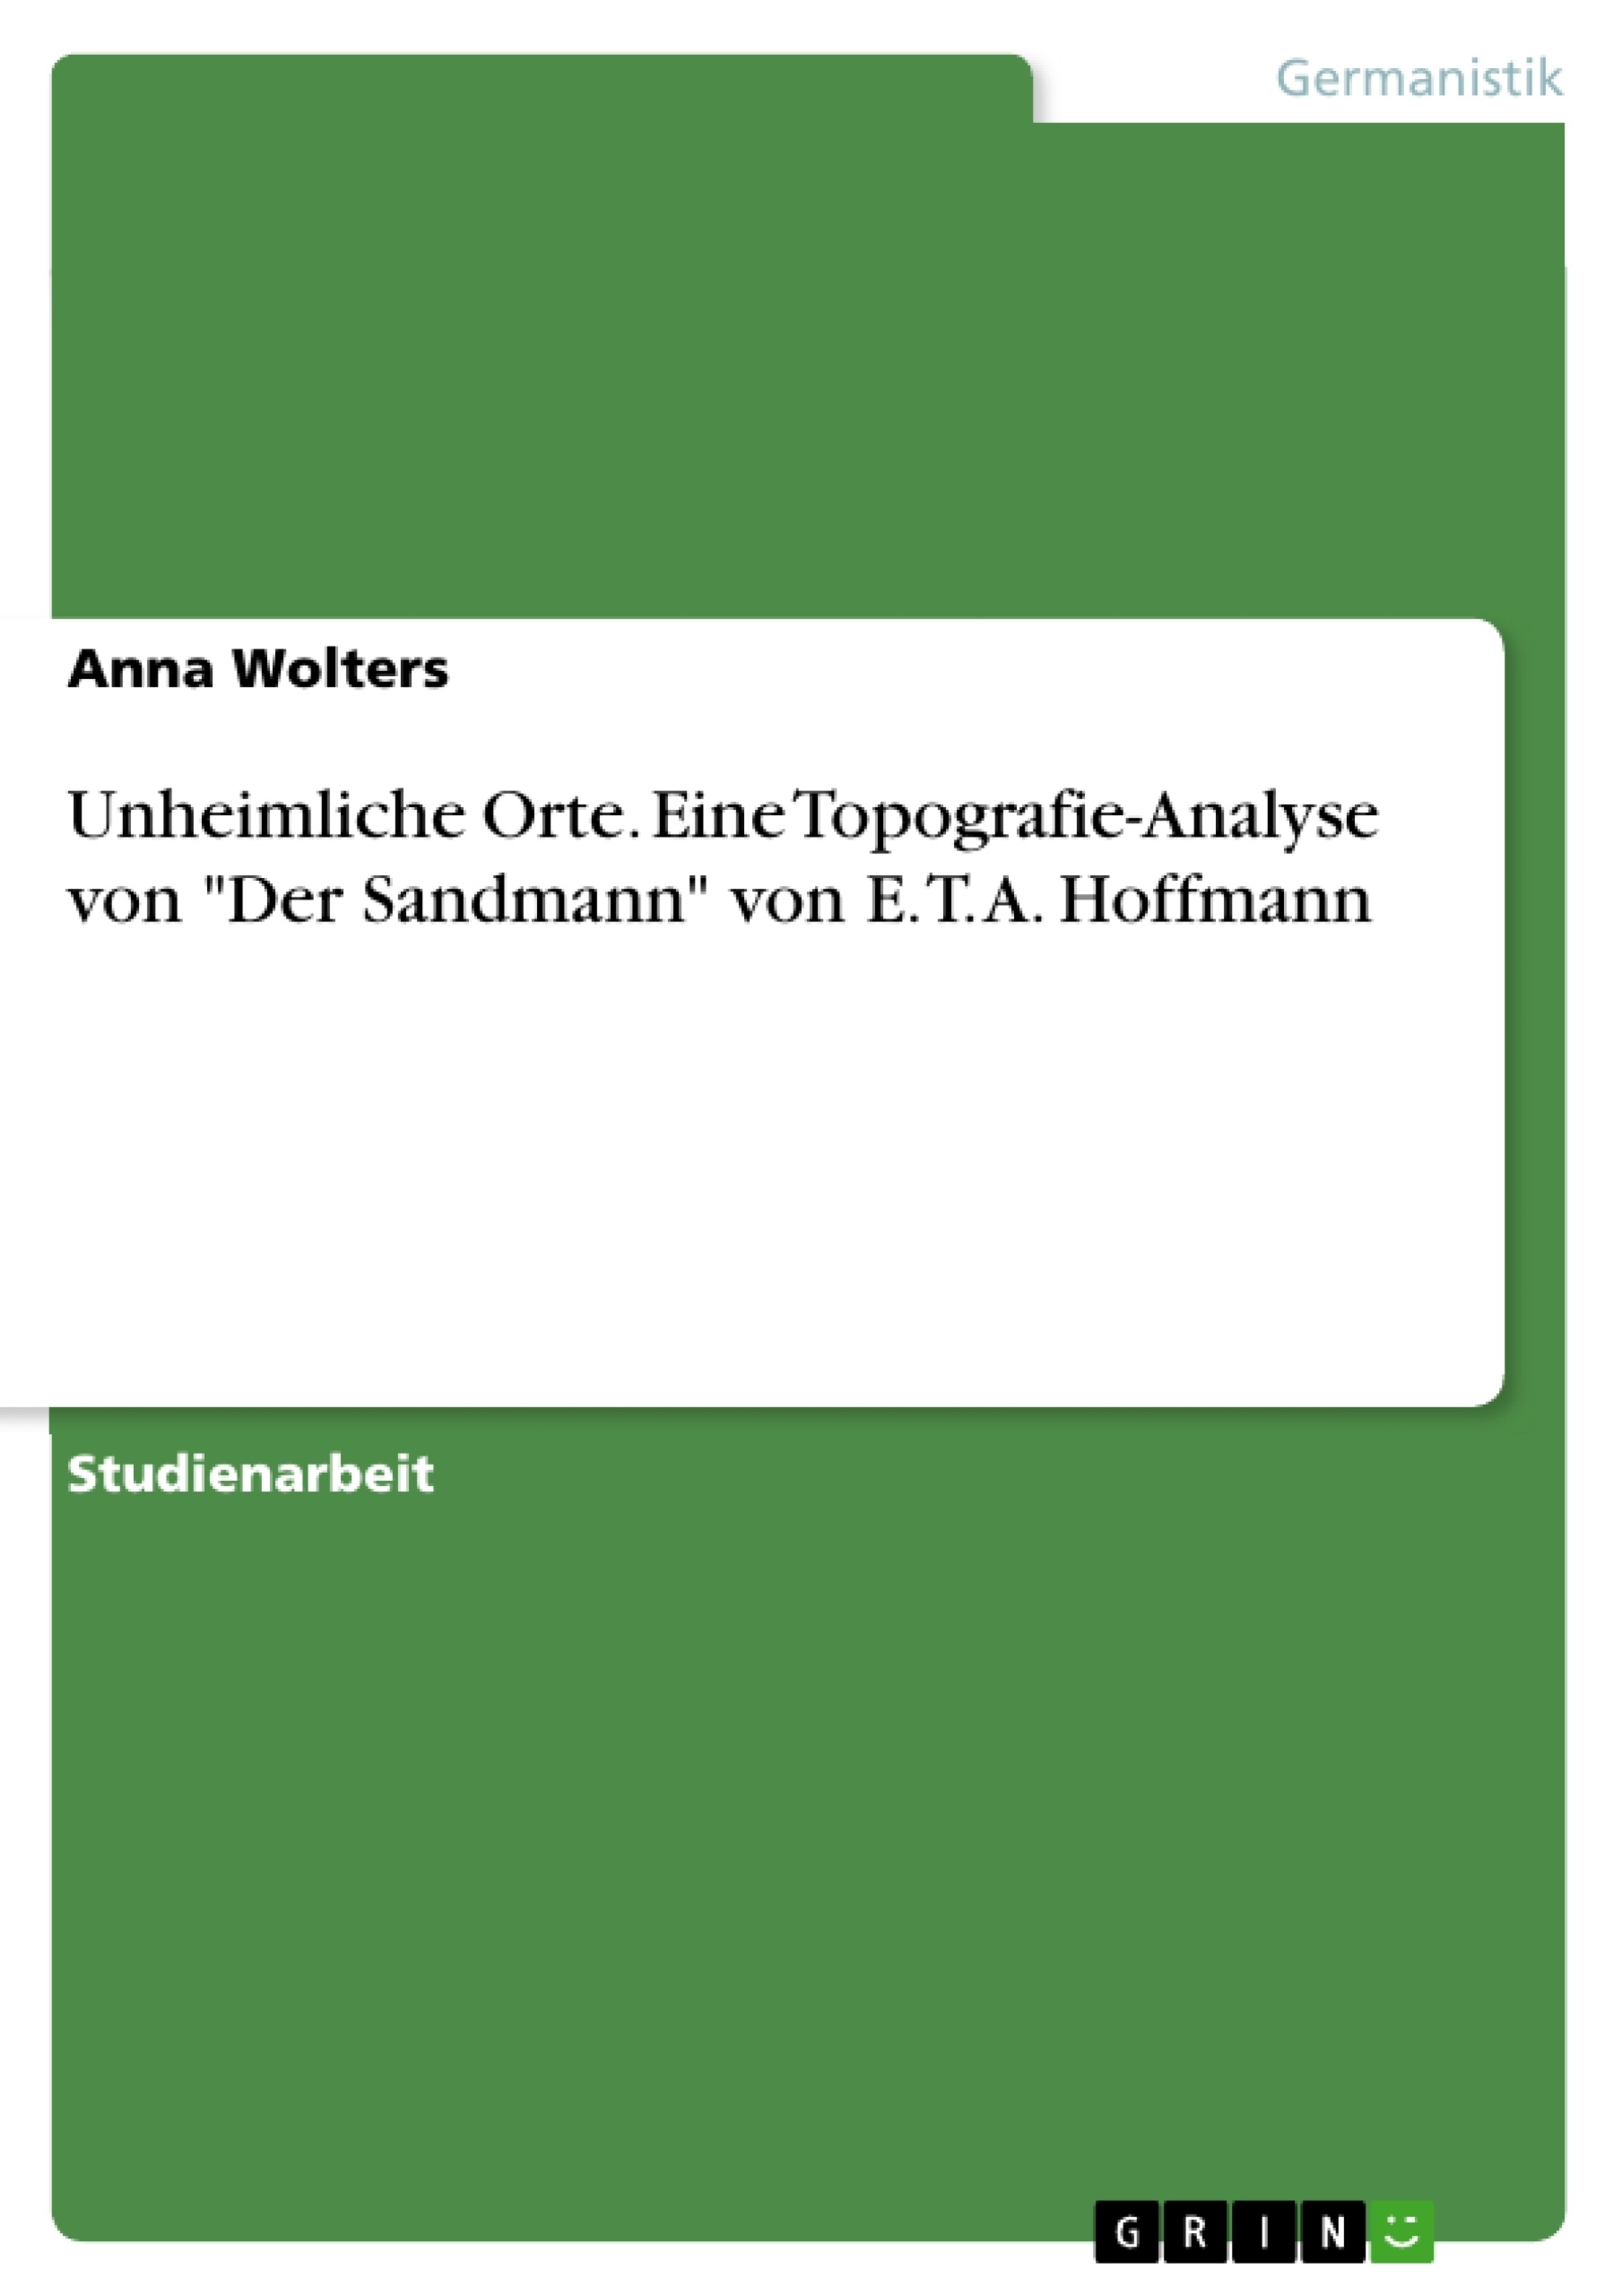 Título: Unheimliche Orte. Eine Topografie-Analyse von "Der Sandmann" von E. T. A. Hoffmann